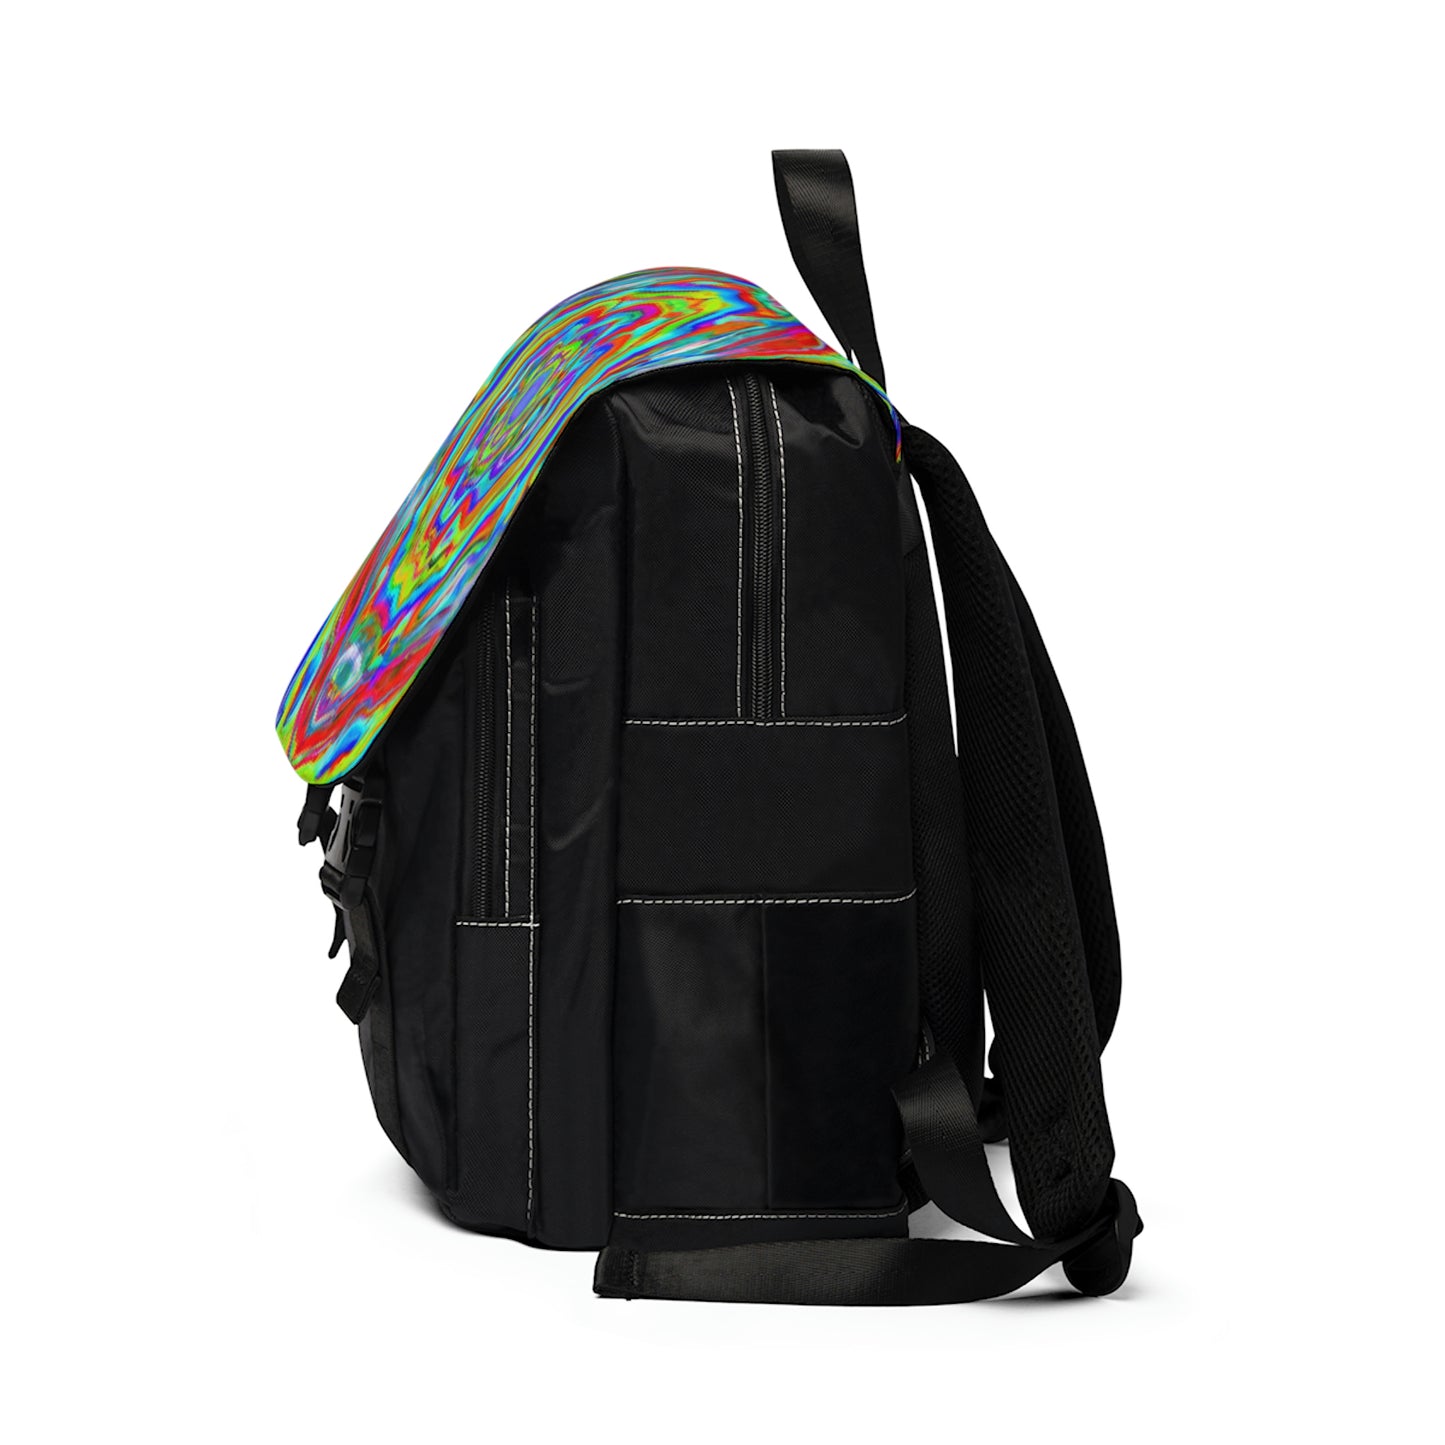 CoutureStephane - Psychedelic Shoulder Travel Backpack Bag